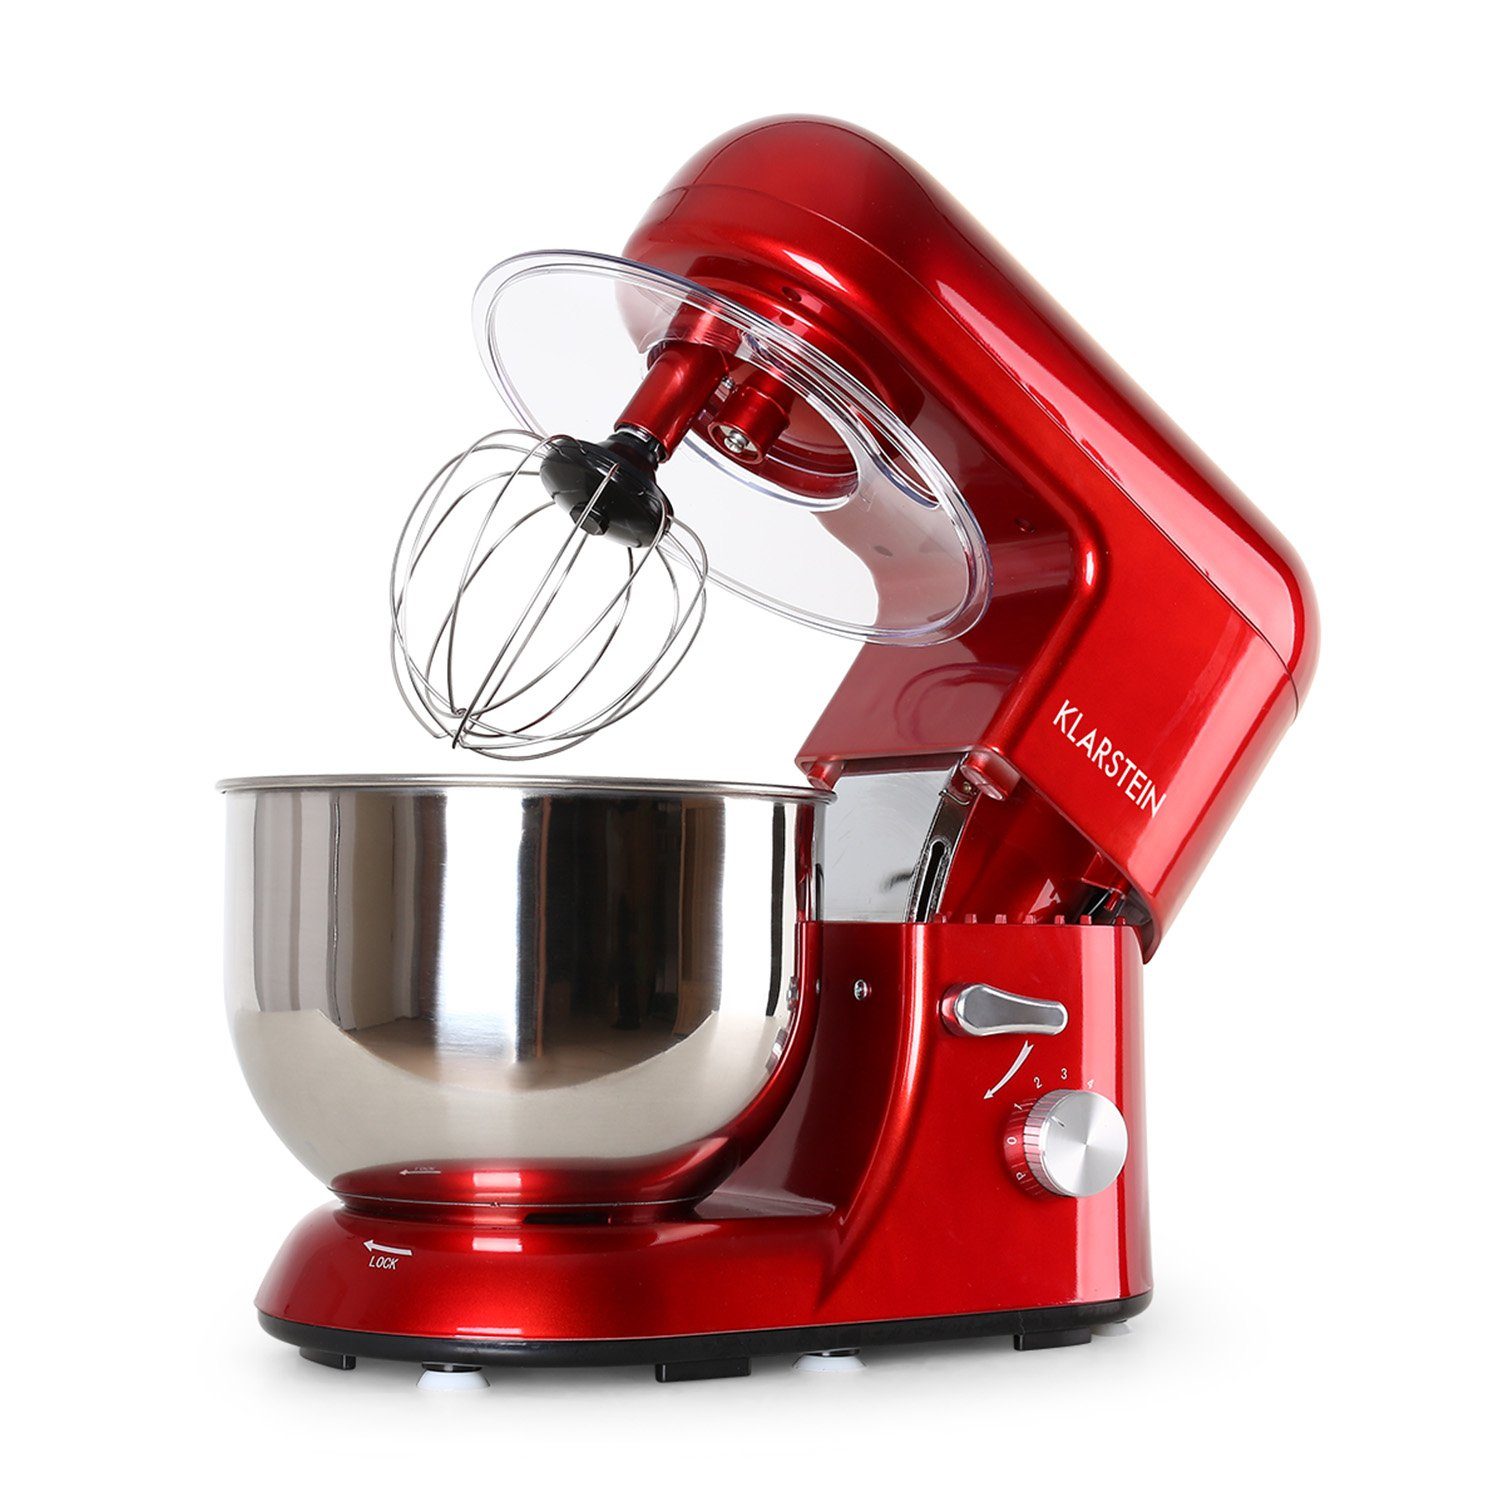 Klarstein Küchenmaschine mit Kochfunktion Bella, 2000 W, 5.2 l Schüssel, Knetmaschine Teigmaschine Teigknetmaschine Rührmaschine Standmixer Rot | Küchenmaschinen